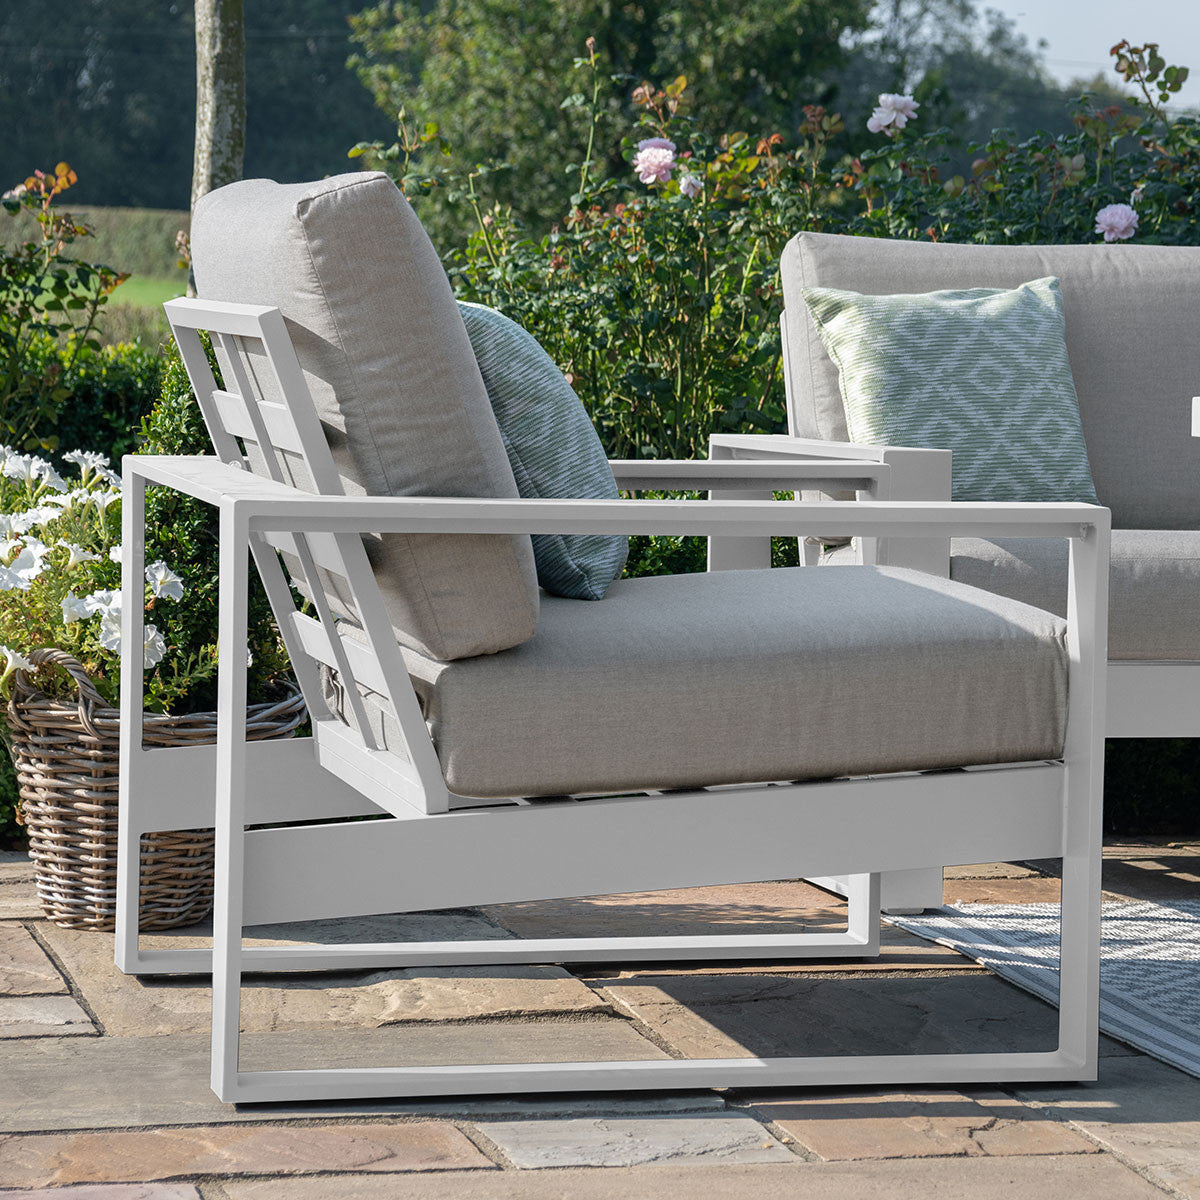 Amalfi Fabric 3 Seat Sofa Set With Rising Table